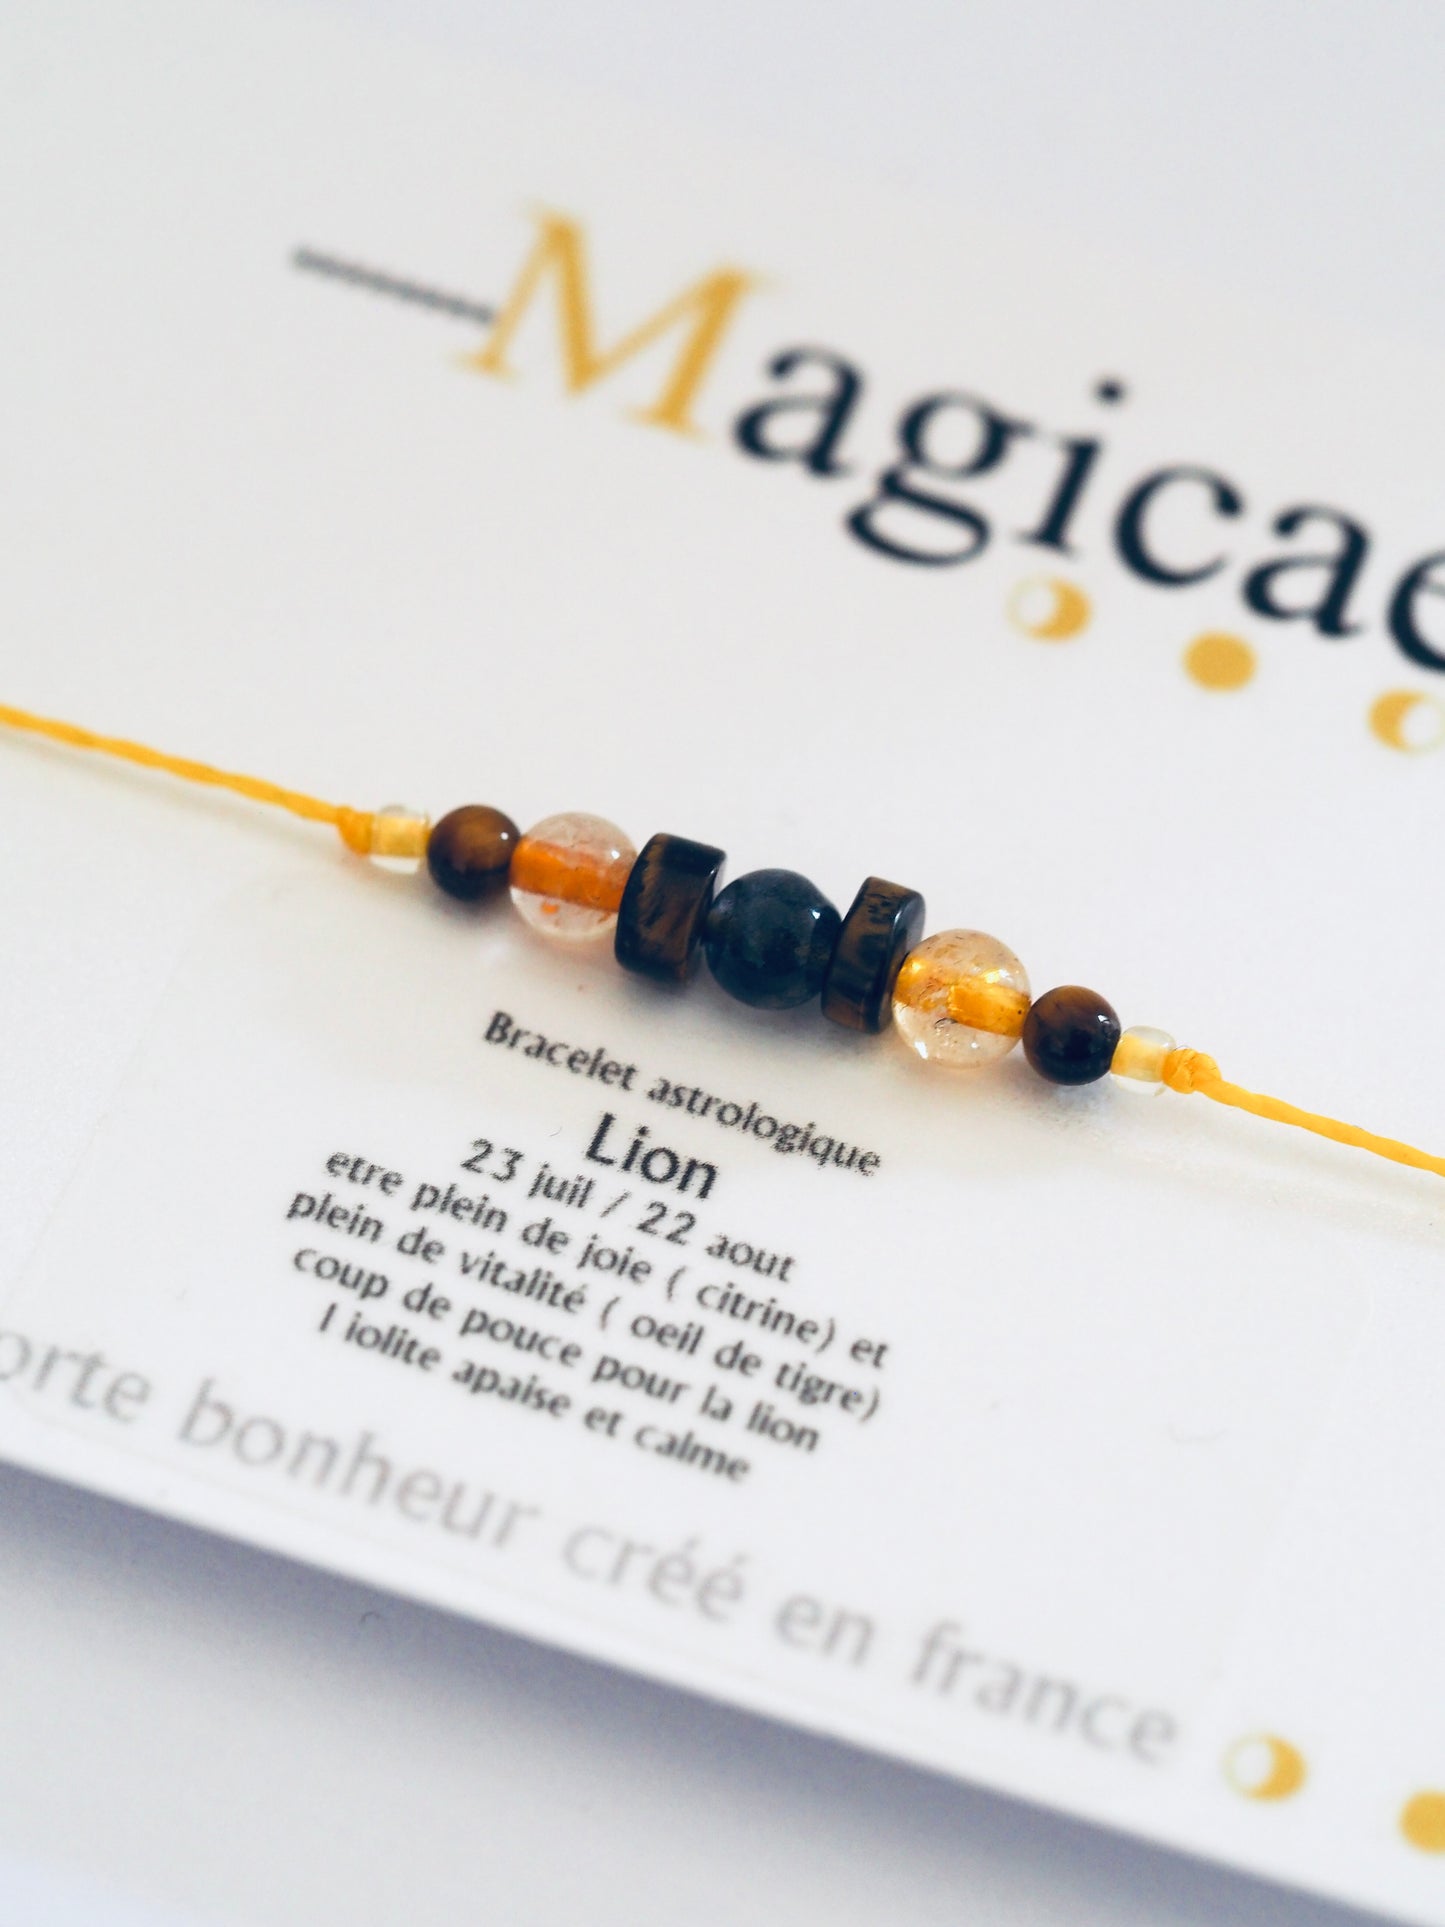 Bracelet astrologique lion - Magicae